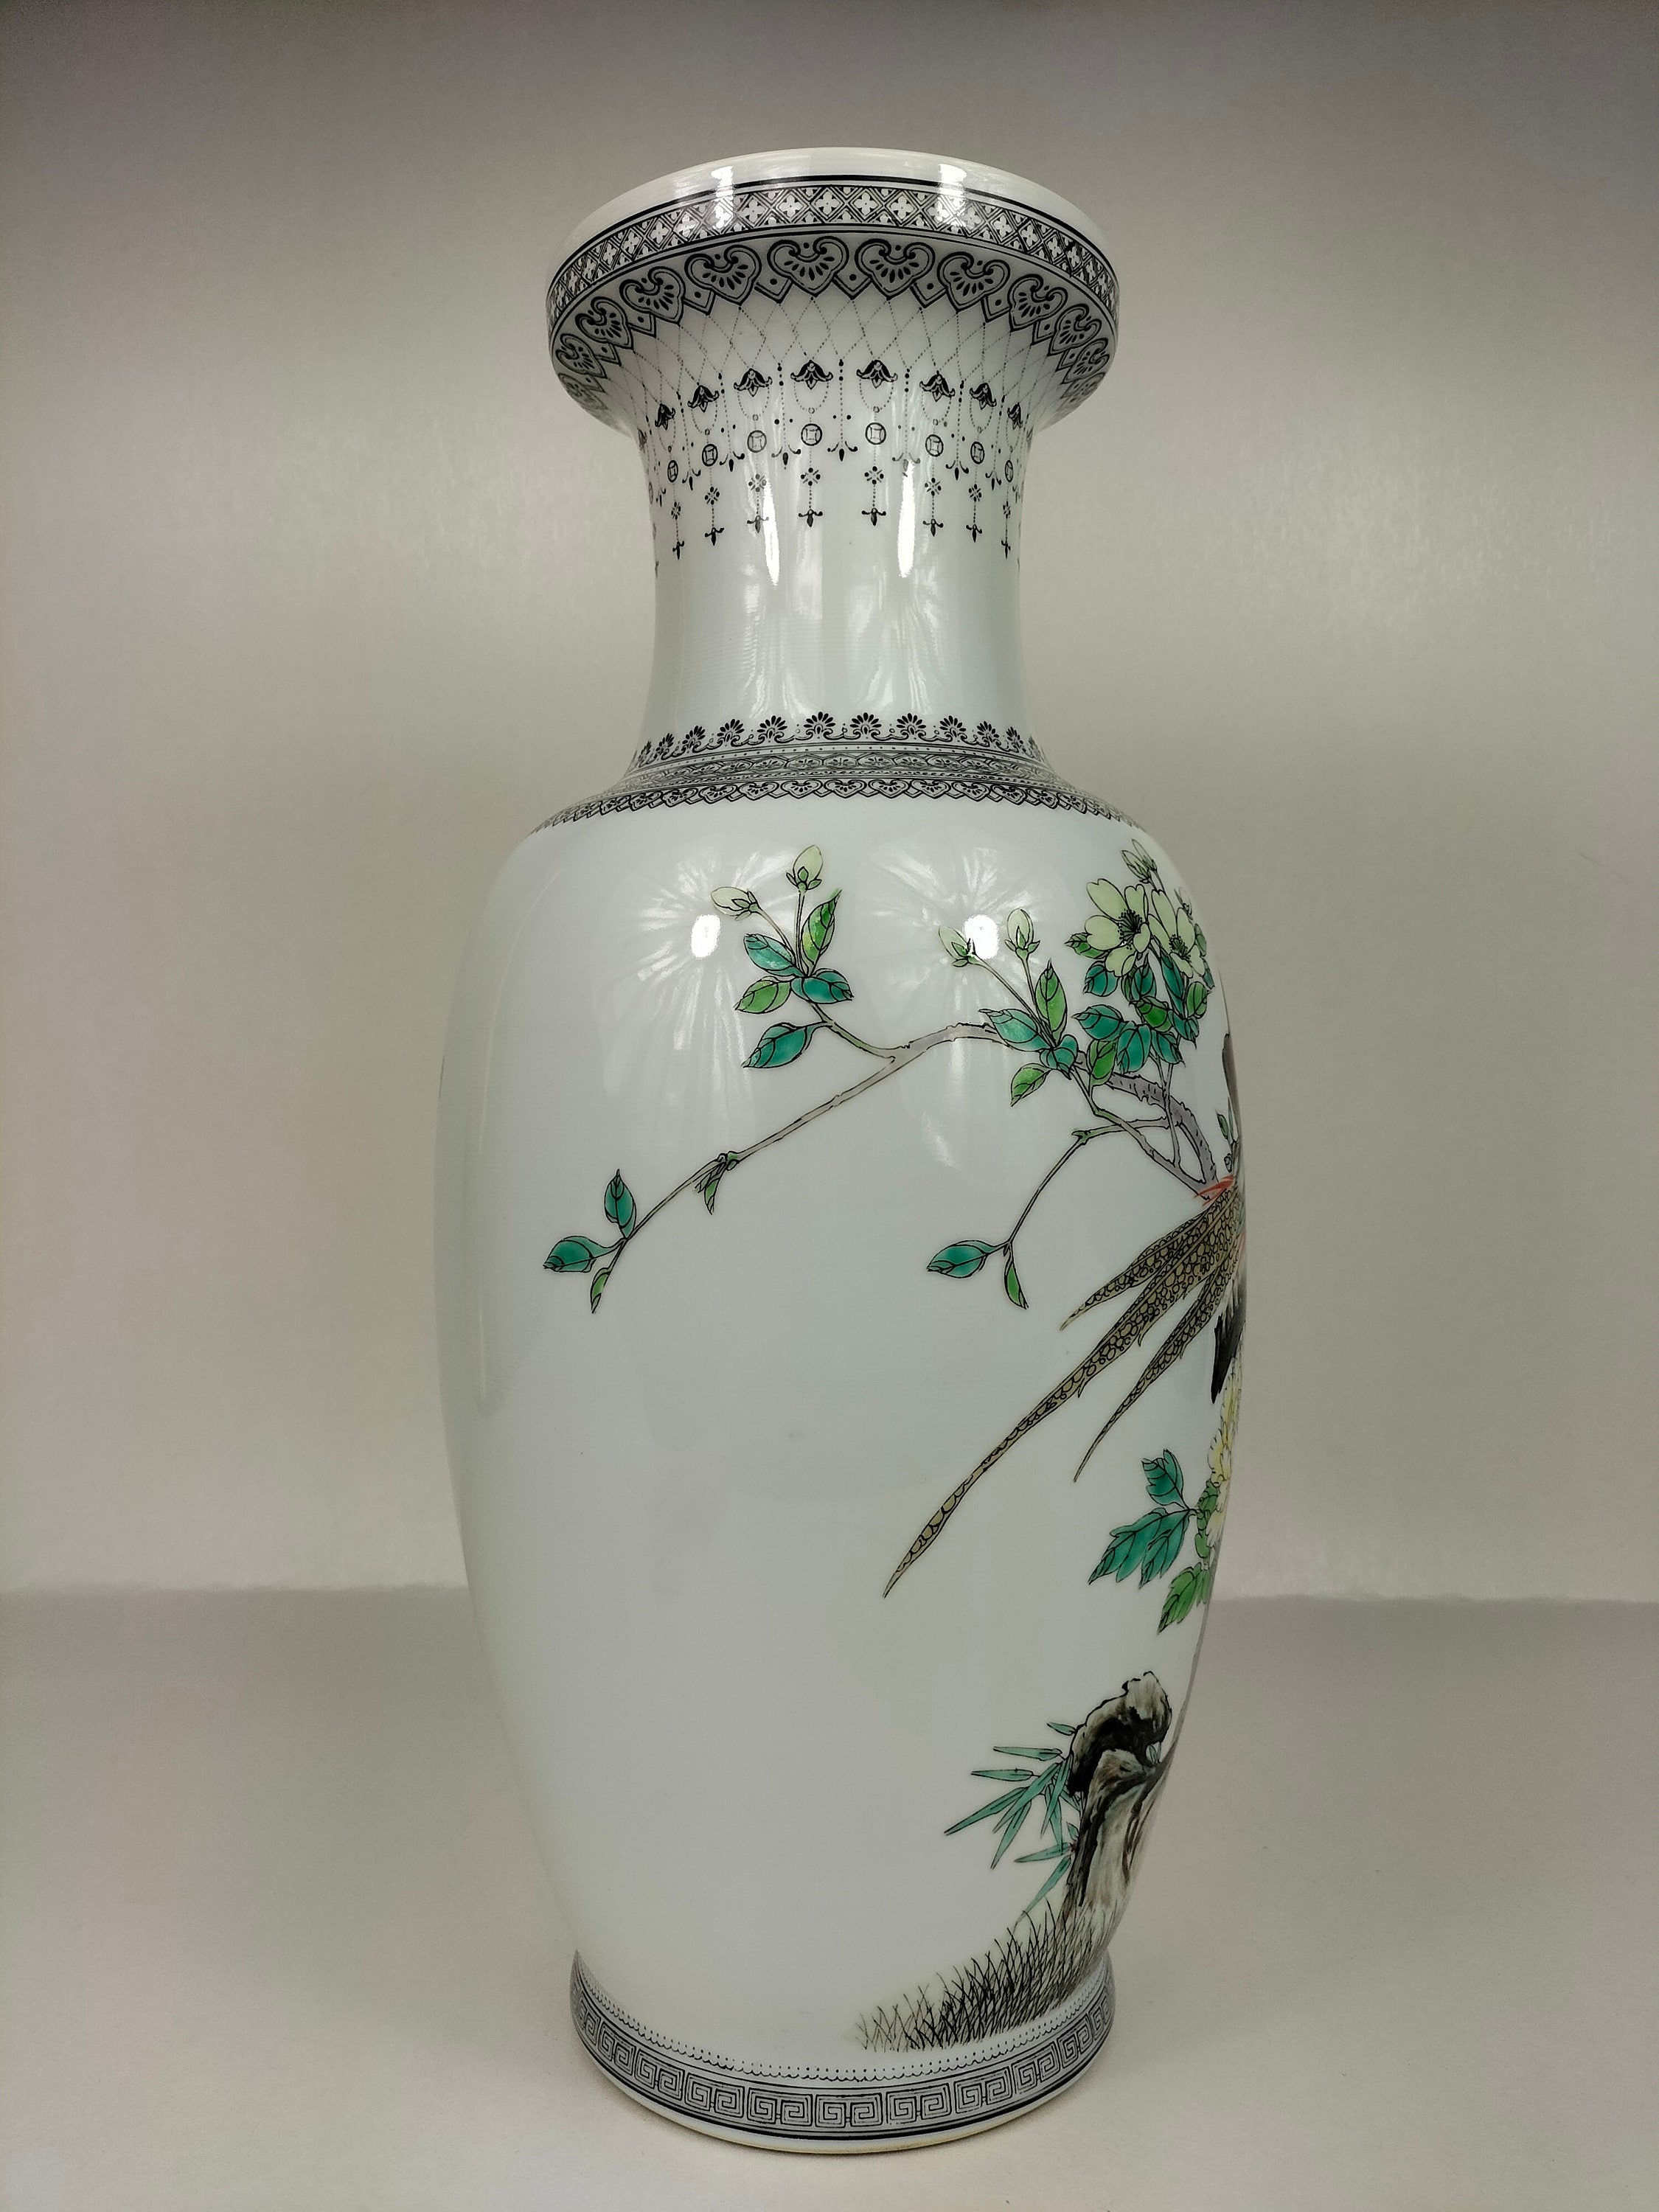 装饰有孔雀和鲜花的中国粉彩花瓶 // 景德镇 - 20 世纪